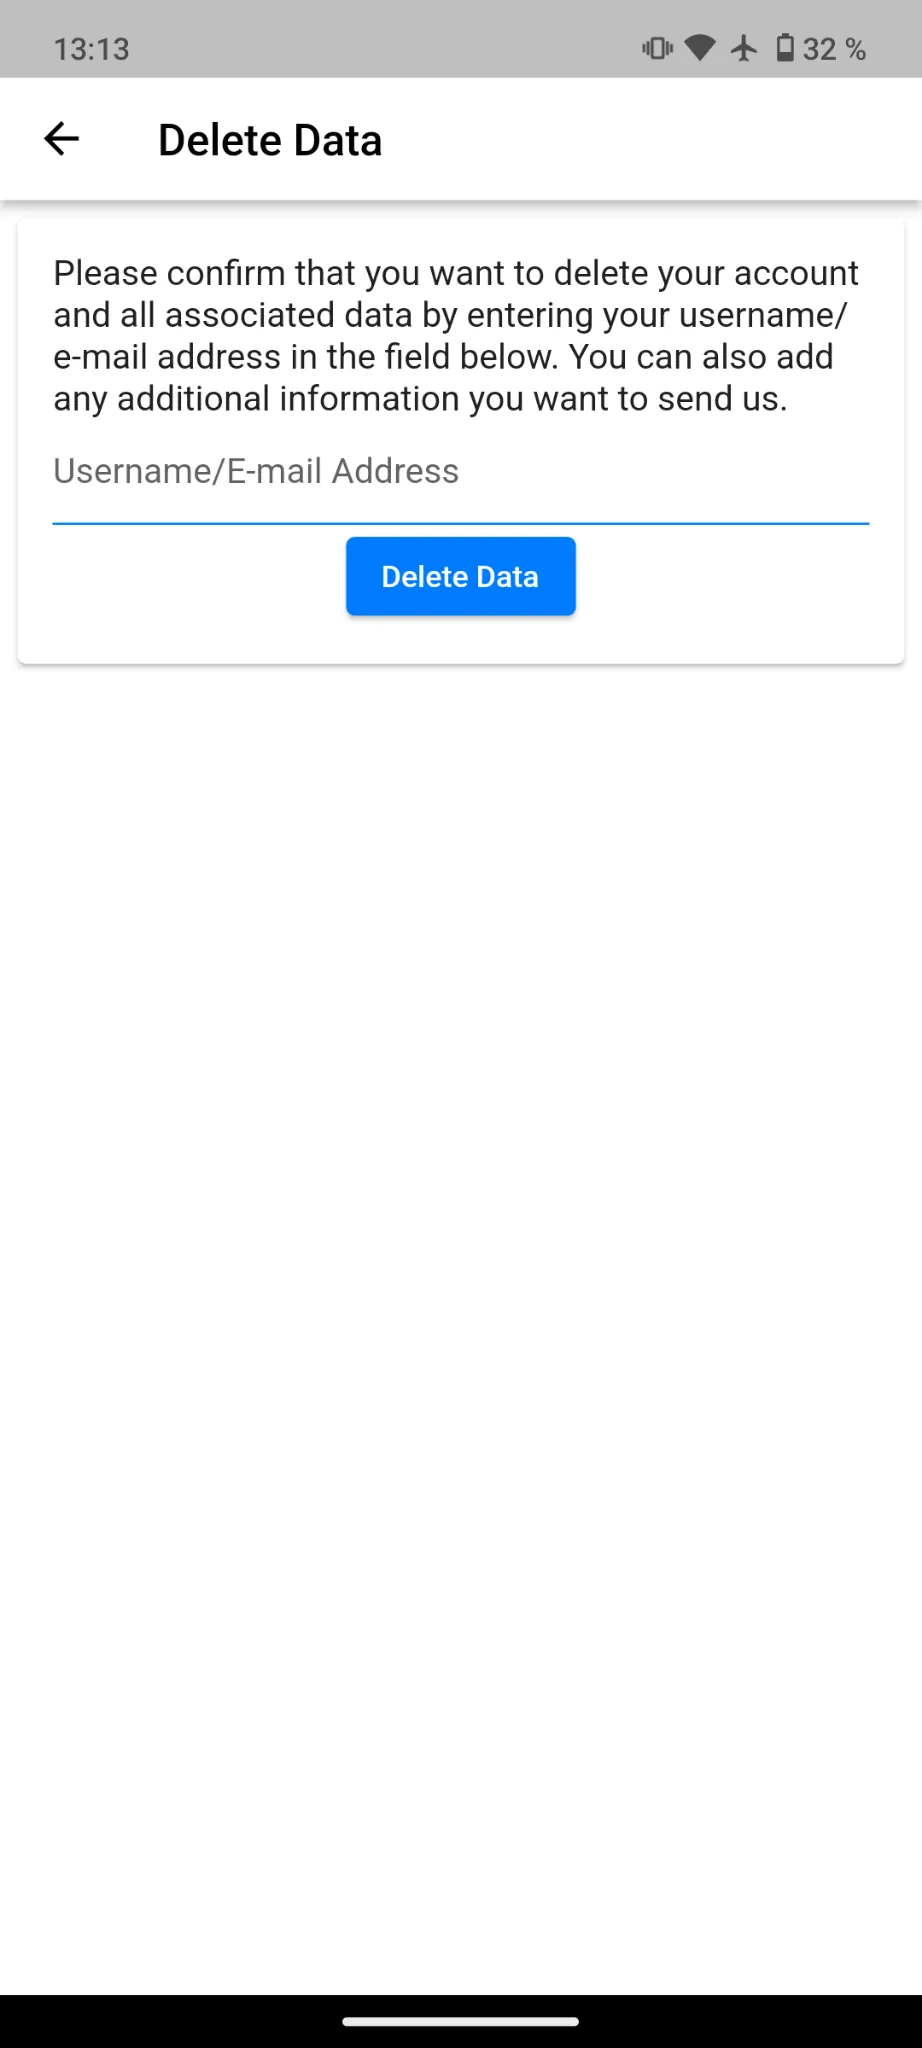 Een screenshot van het scherm waar gebruikers hun e-mailadres kunnen invoeren om de verwijdering van hun account aan te vragen.